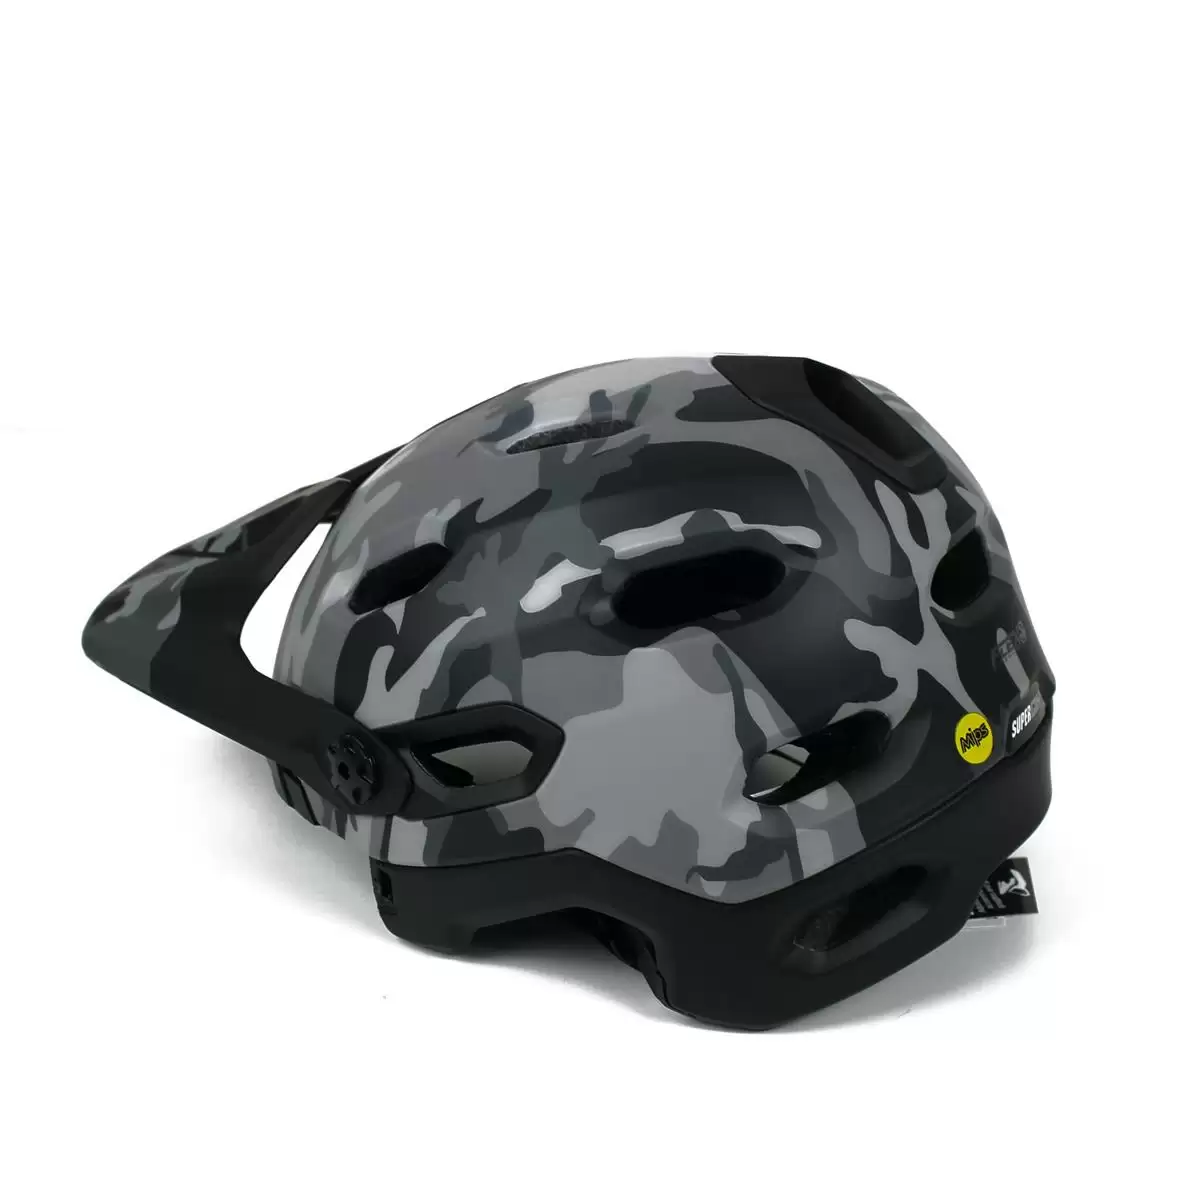 Helm Super DH MIPS Black Camo Größe L (59-62cm) #9